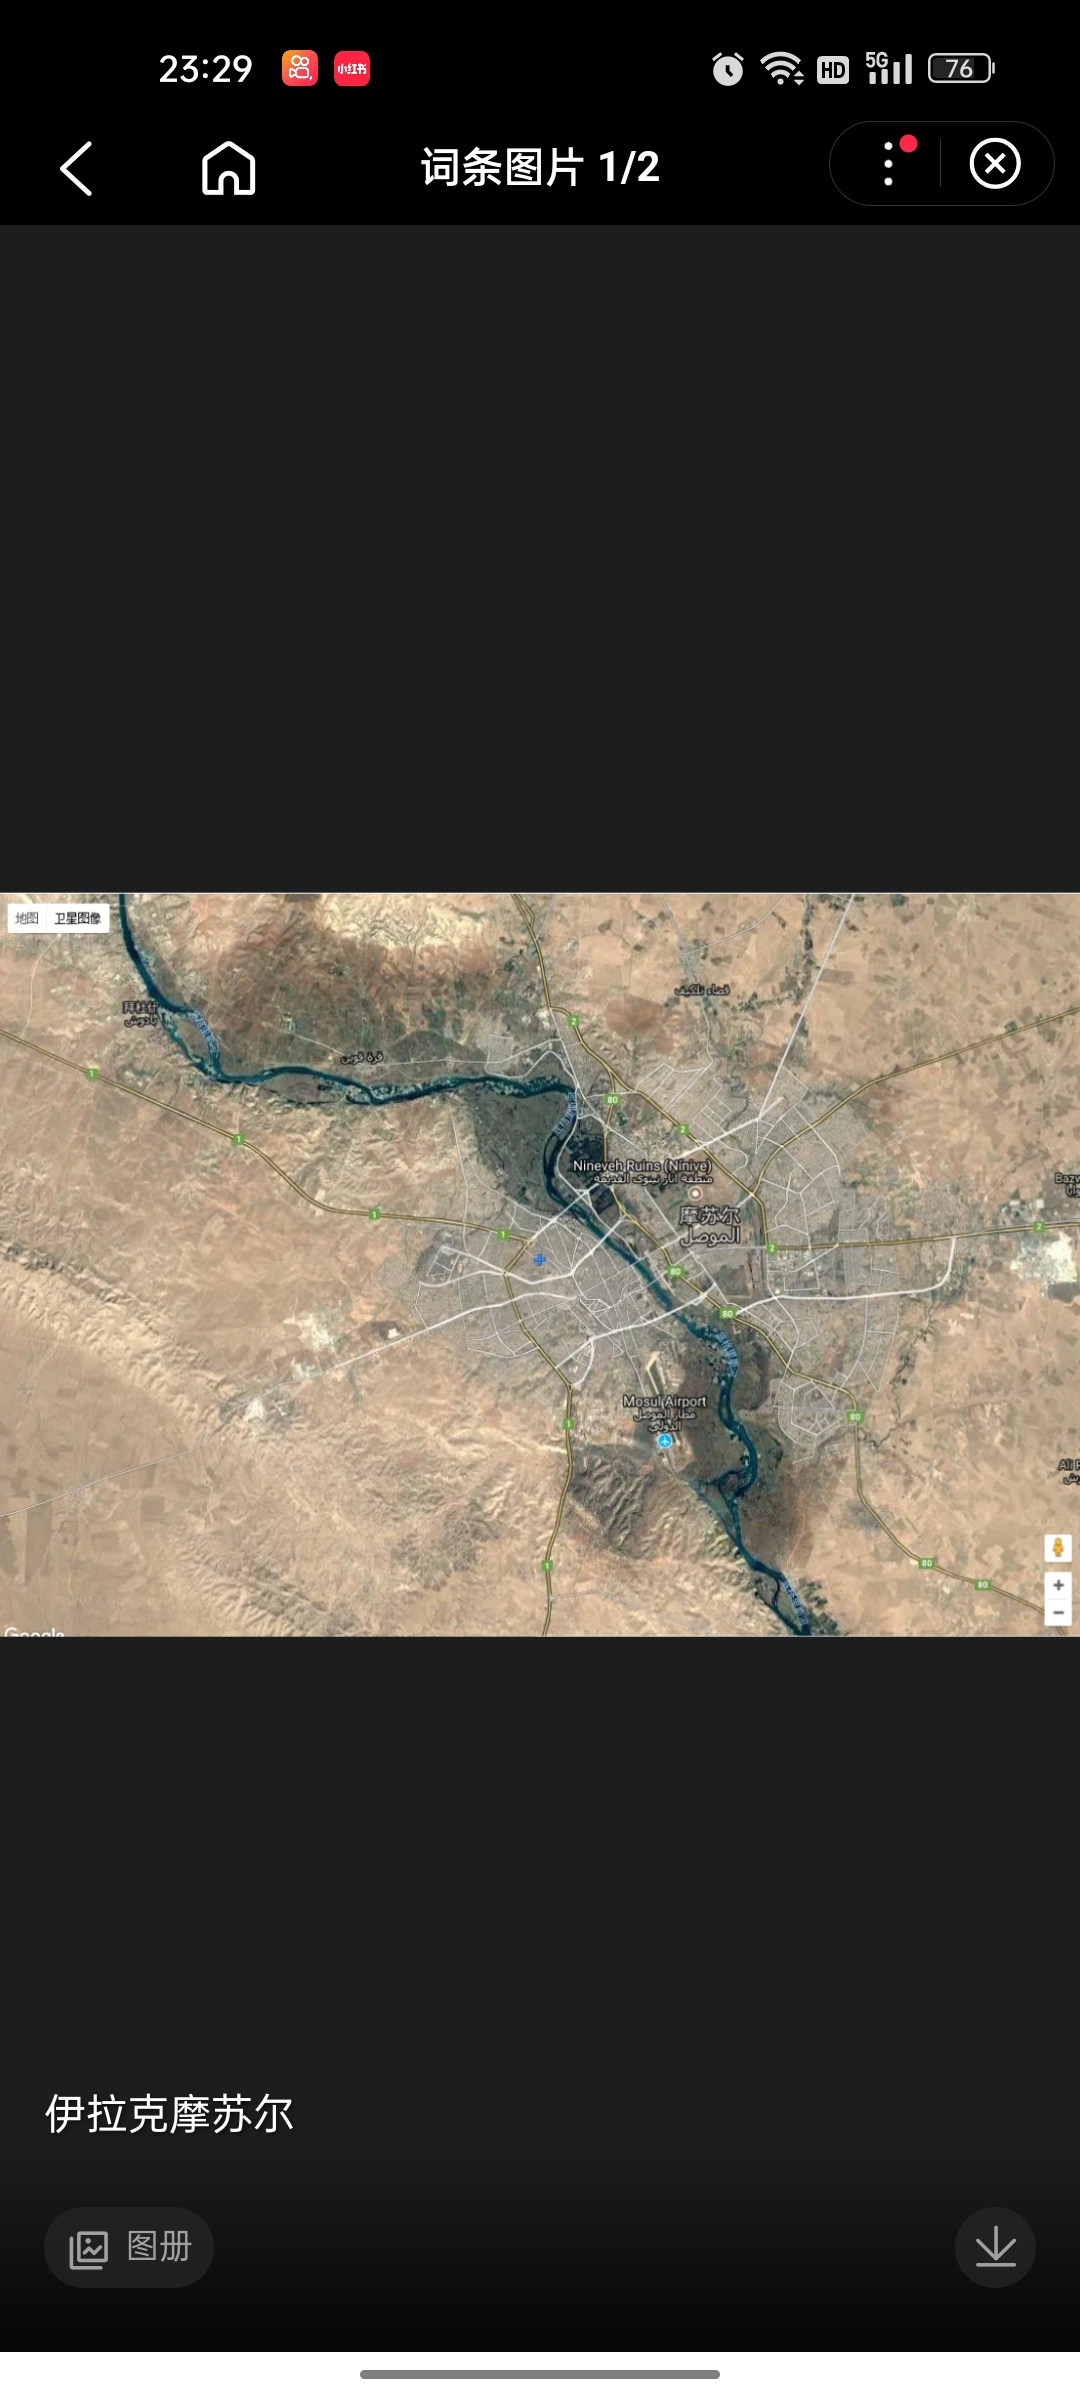 摩苏尔，又名“哈德巴”（al-Hadba），尼尼微省首府，伊拉克第二大城市，也是伊北方工业、农业、金